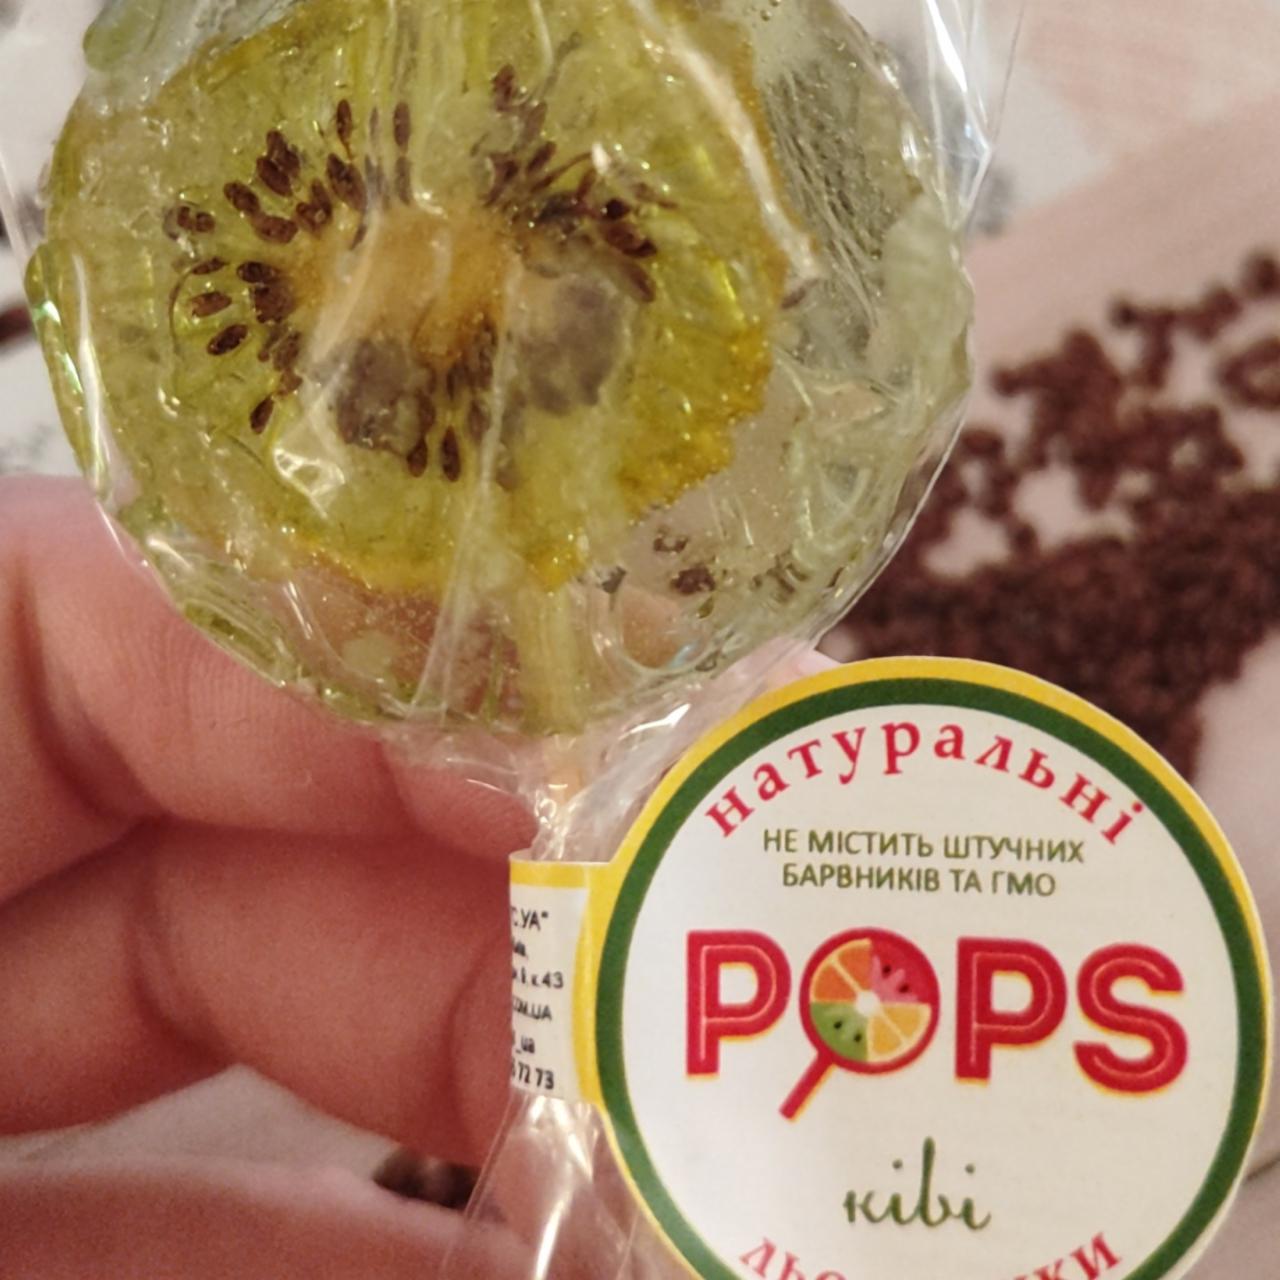 Фото - Натуральная конфета Попс киви Pops